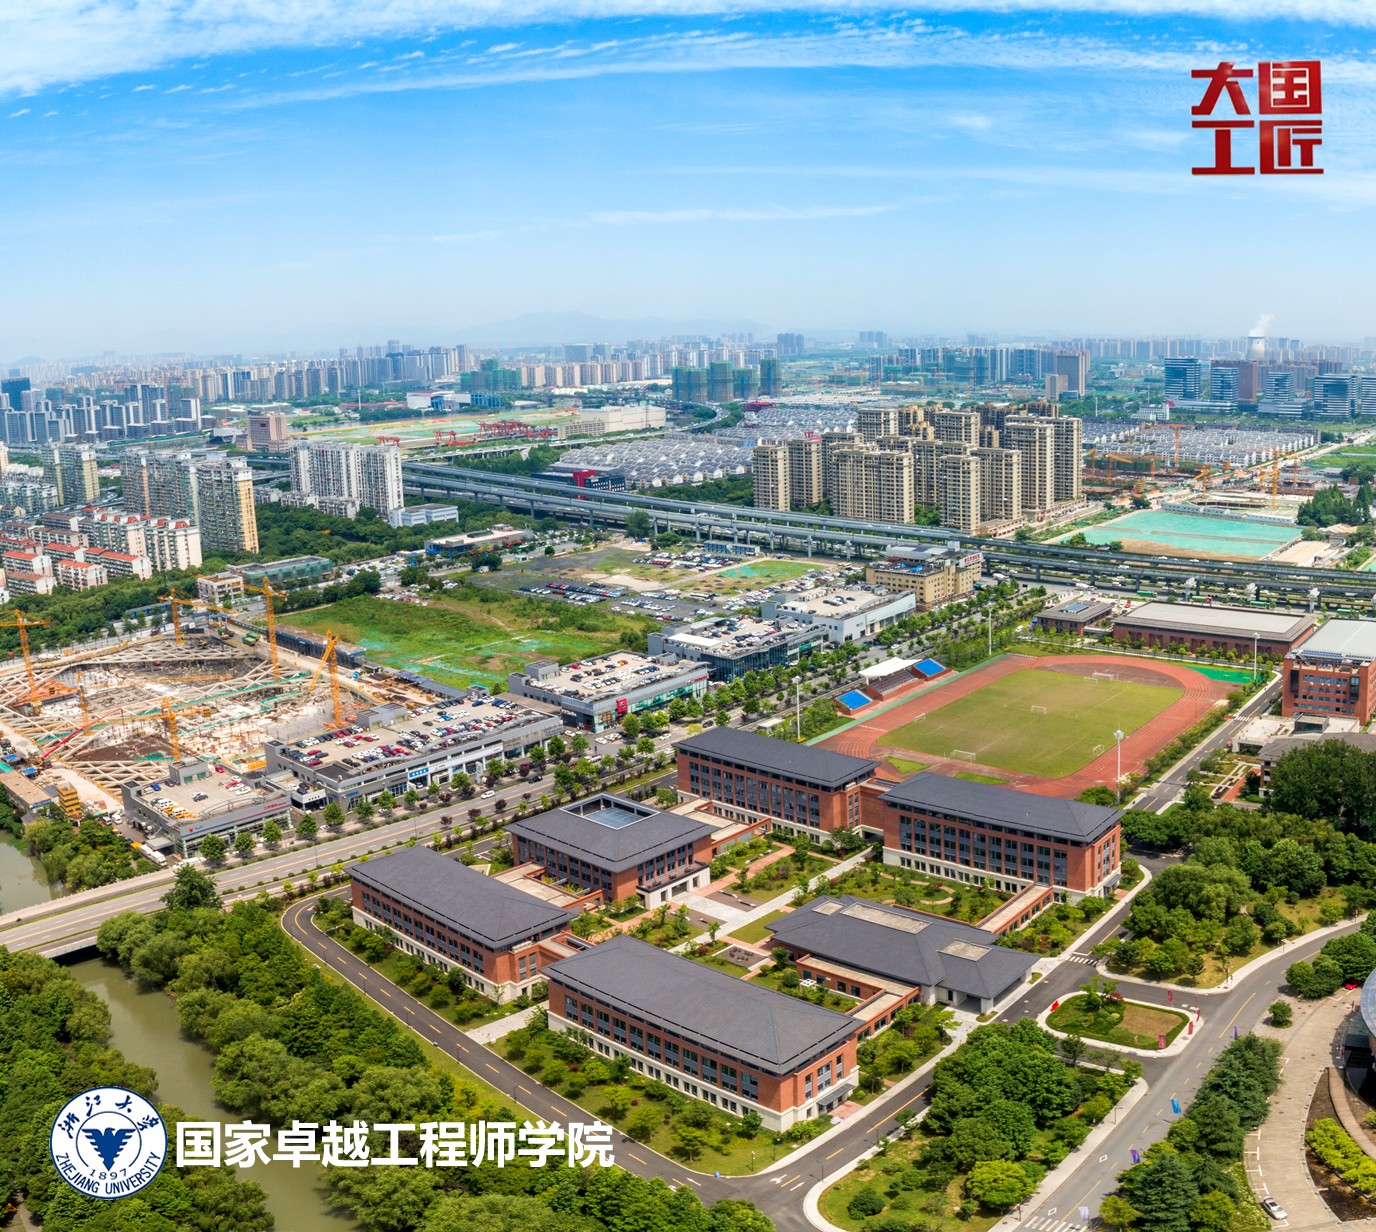 浙江大学-内蒙古电力集团联合研发中心成功获批两项国家重点研发计划项目